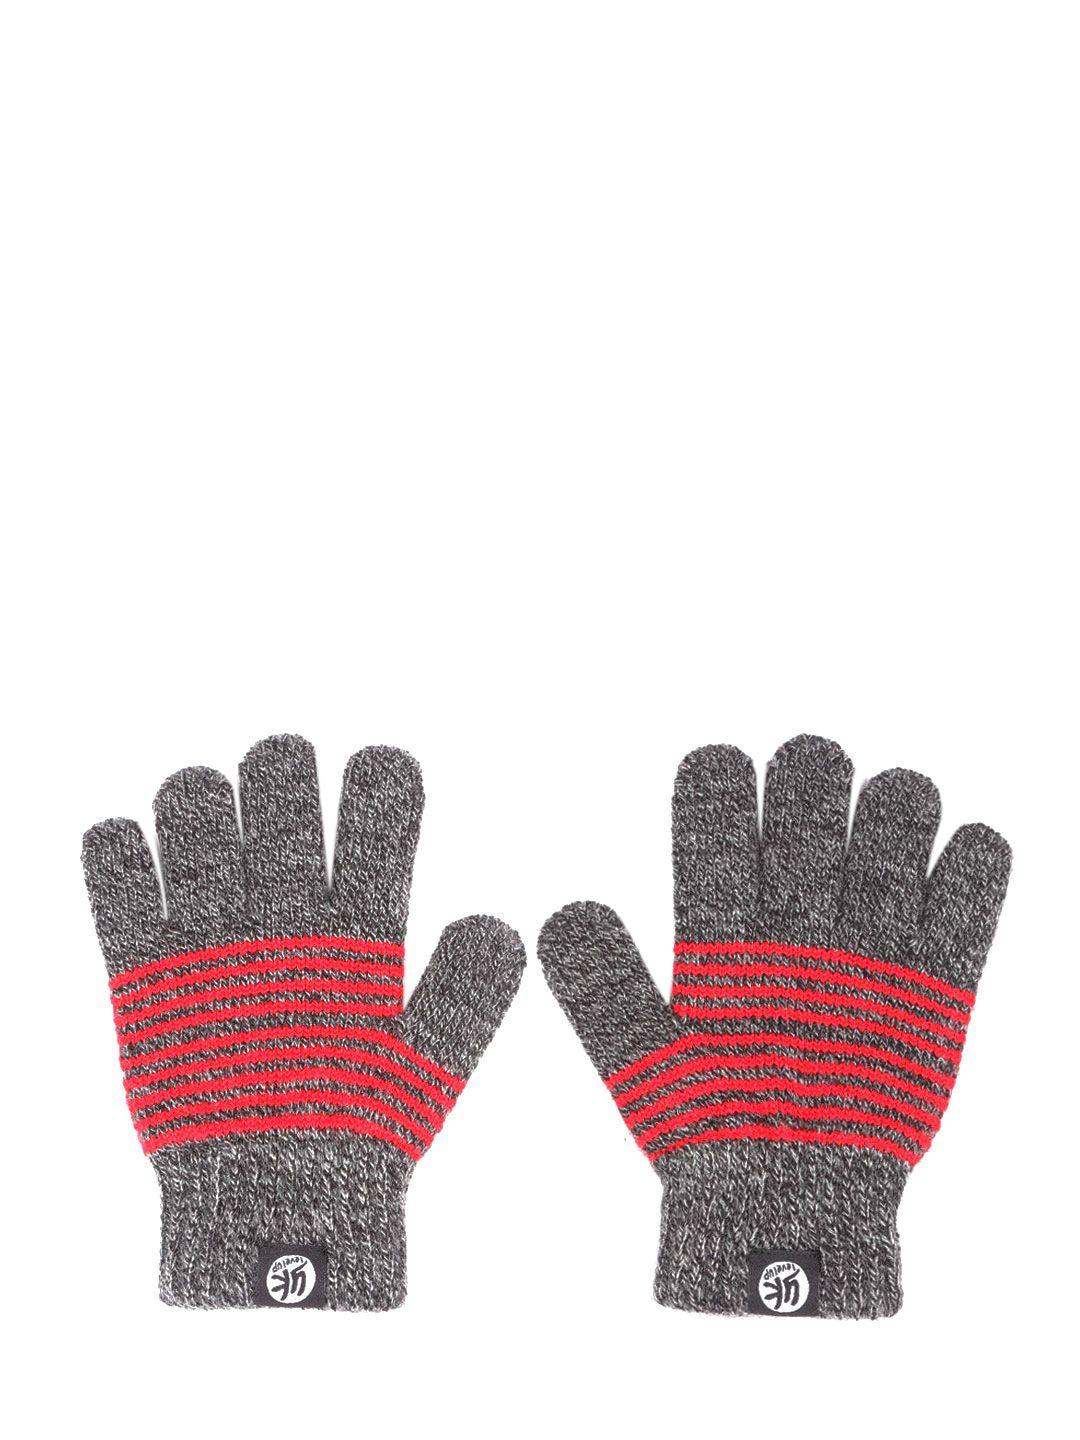 yk kids grey melange & red striped hand gloves